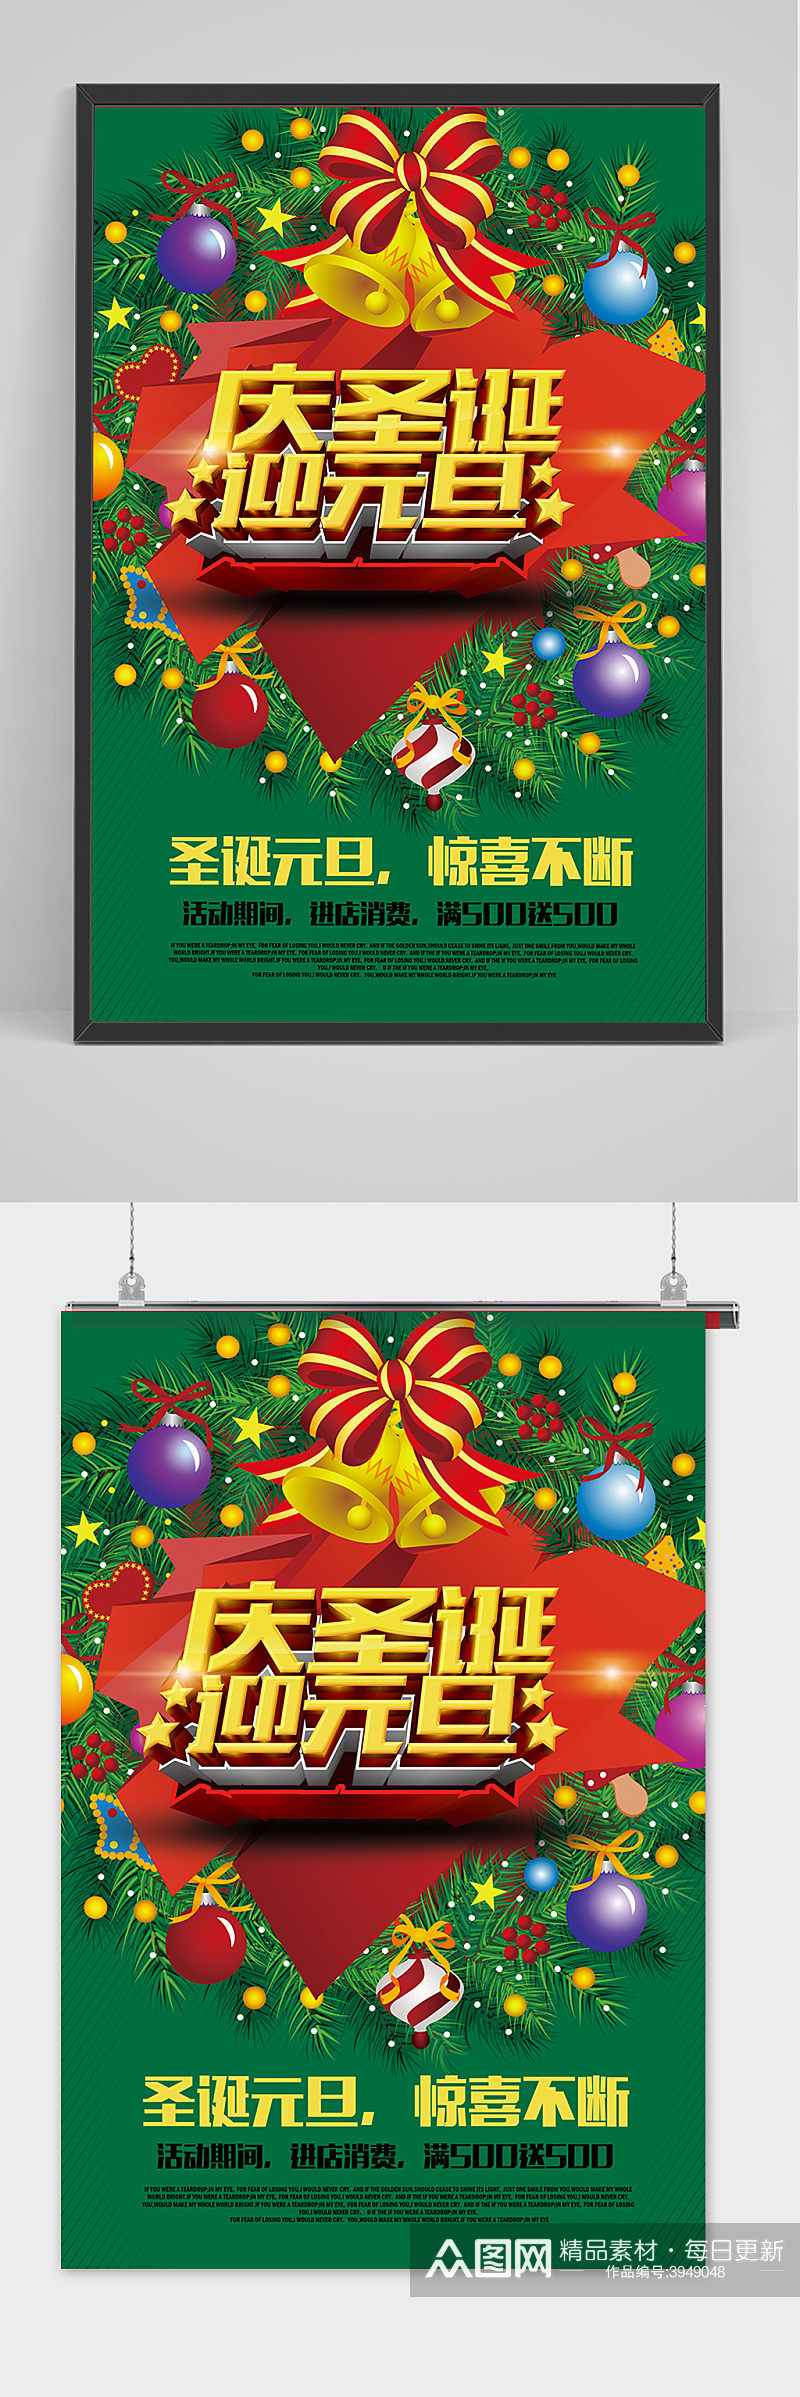 清新庆圣诞迎元旦快乐宣传海报素材